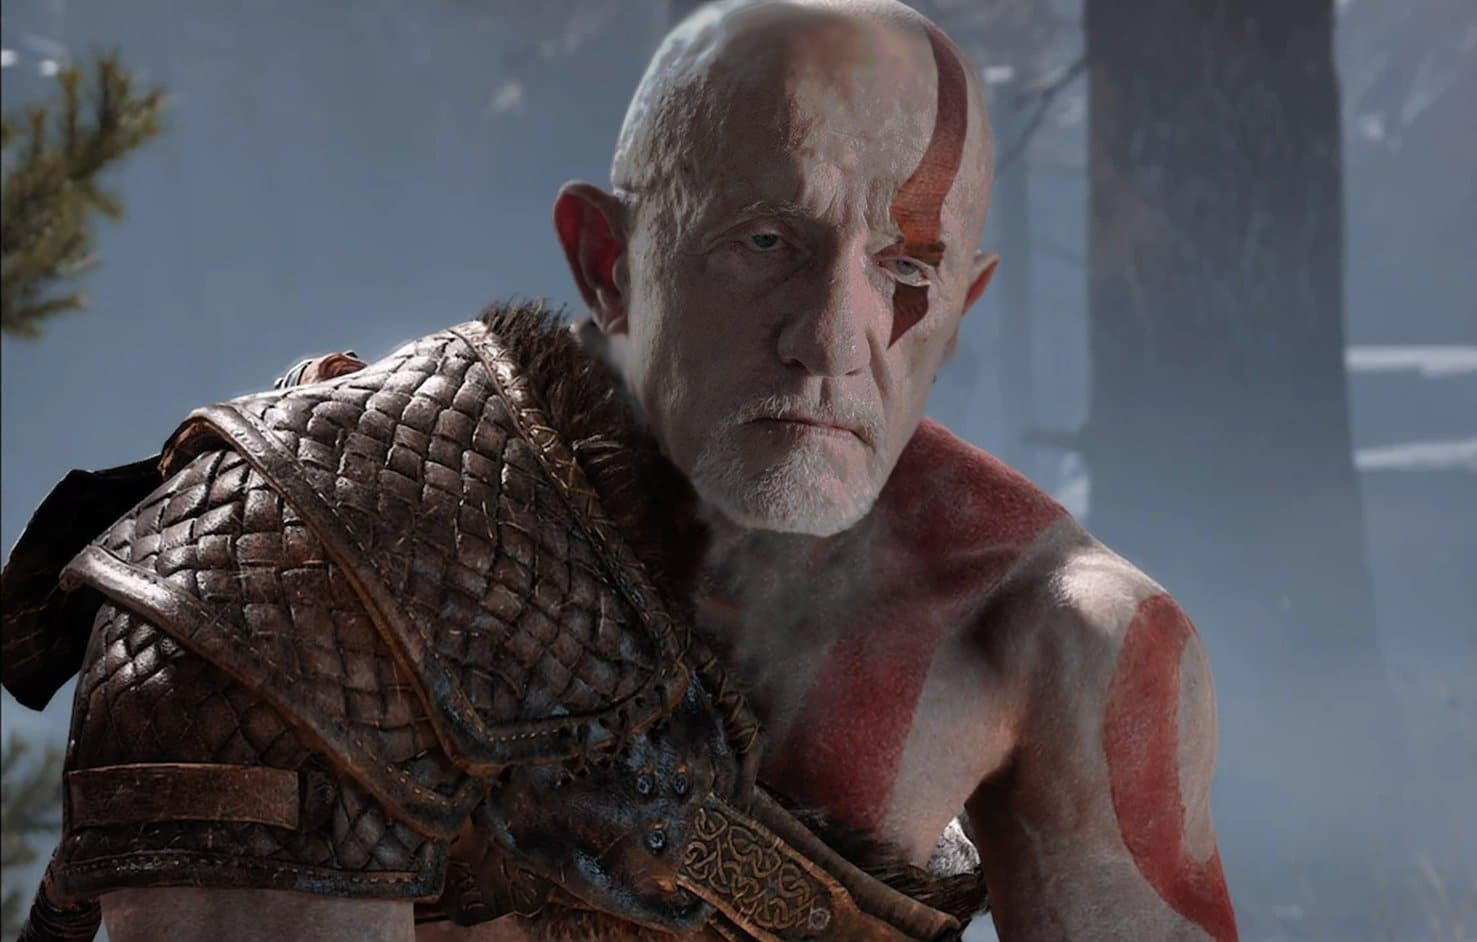 PlayStation convierte a Mike de Better Call Saul y Breaking Bad en Kratos en un meme